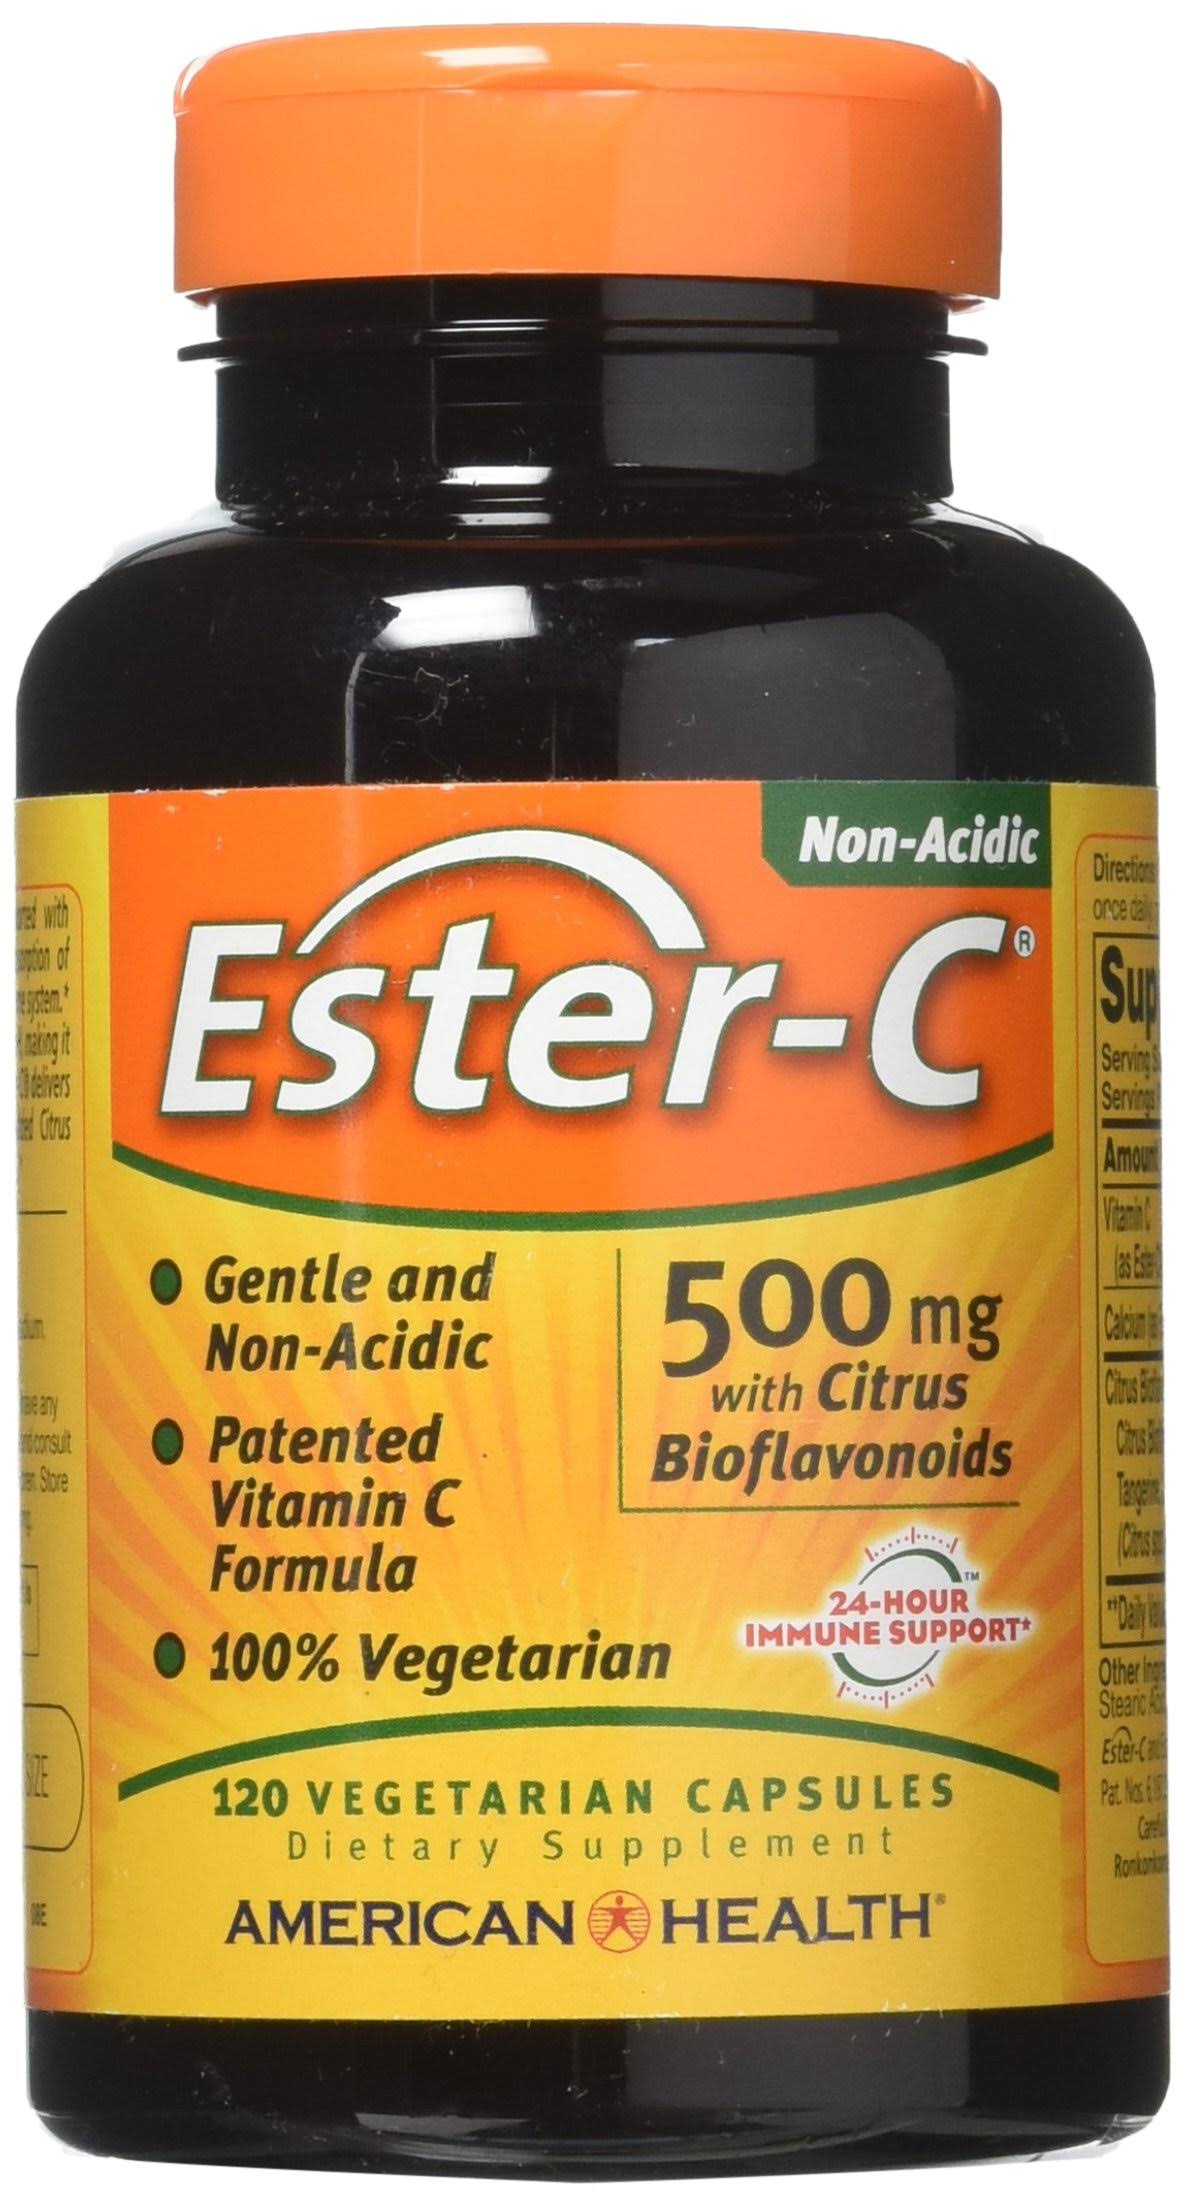 Ester-c With Citrus Bioflavonoids 500mg - 120 Capsules